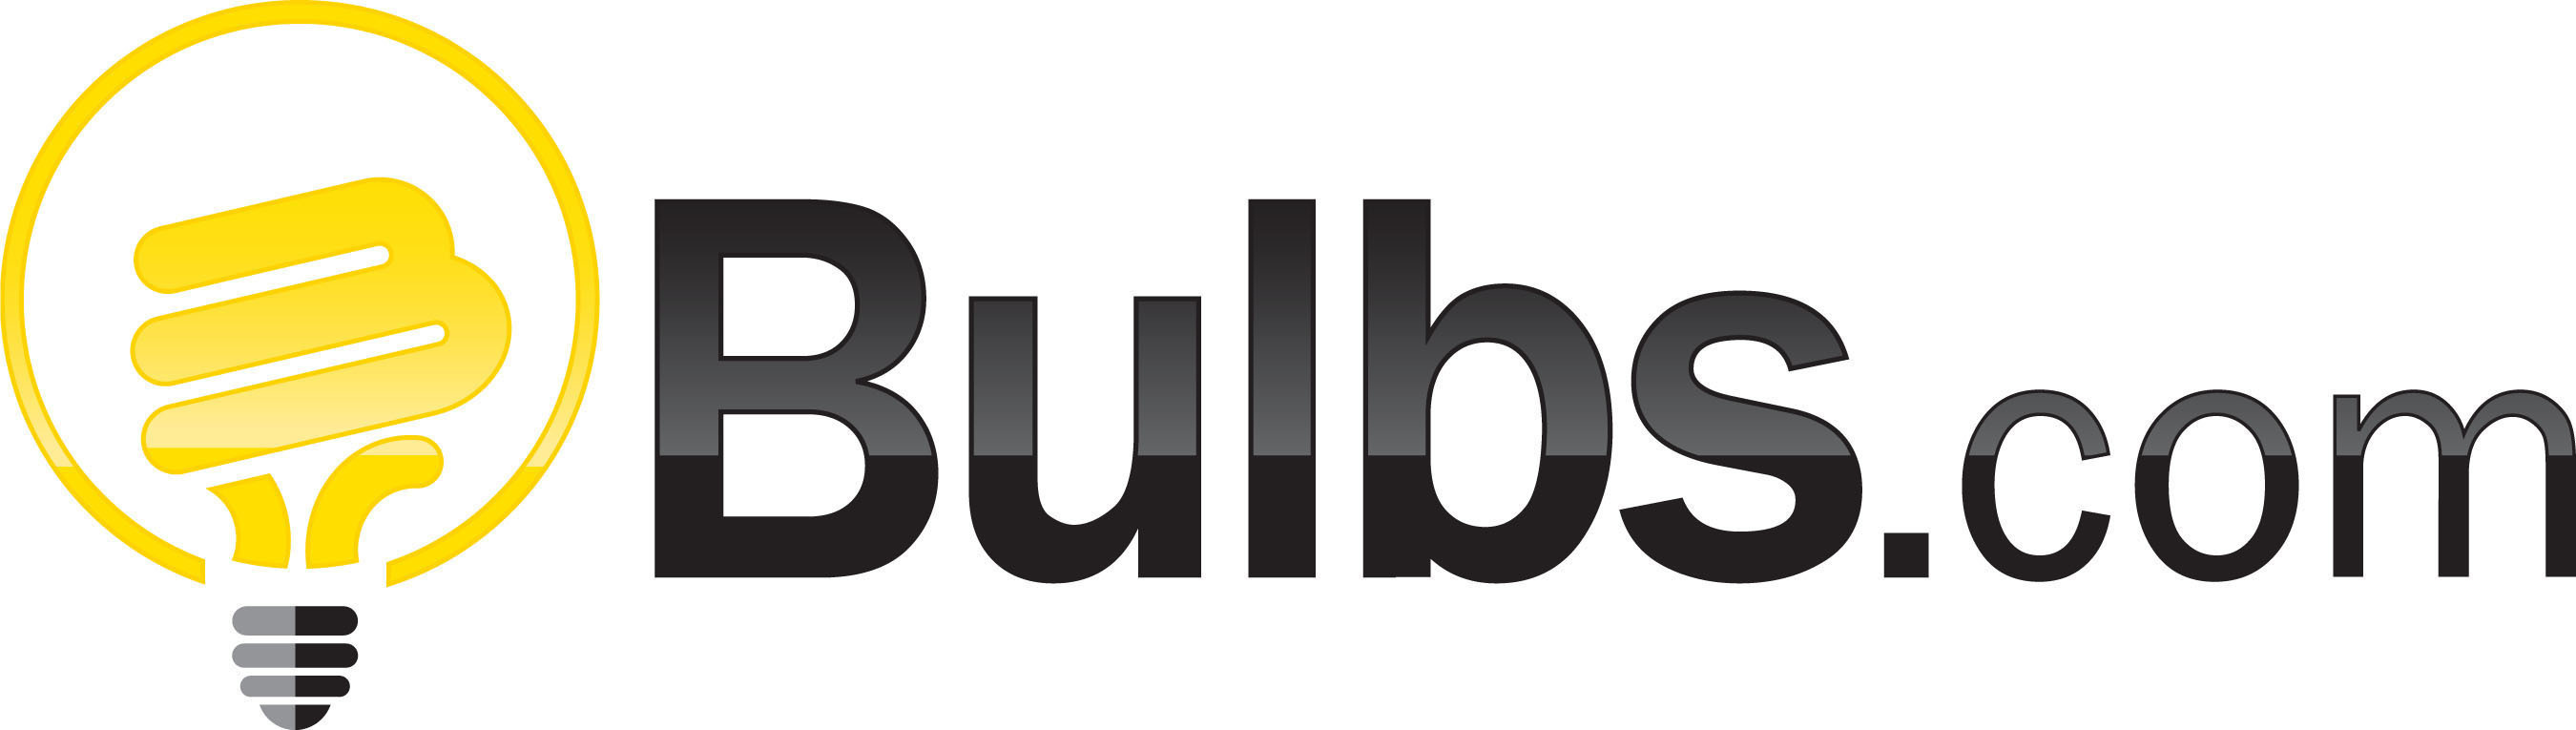 Bulbs.com logo. (PRNewsFoto/Bulbs.com) (PRNewsFoto/BULBS.COM)